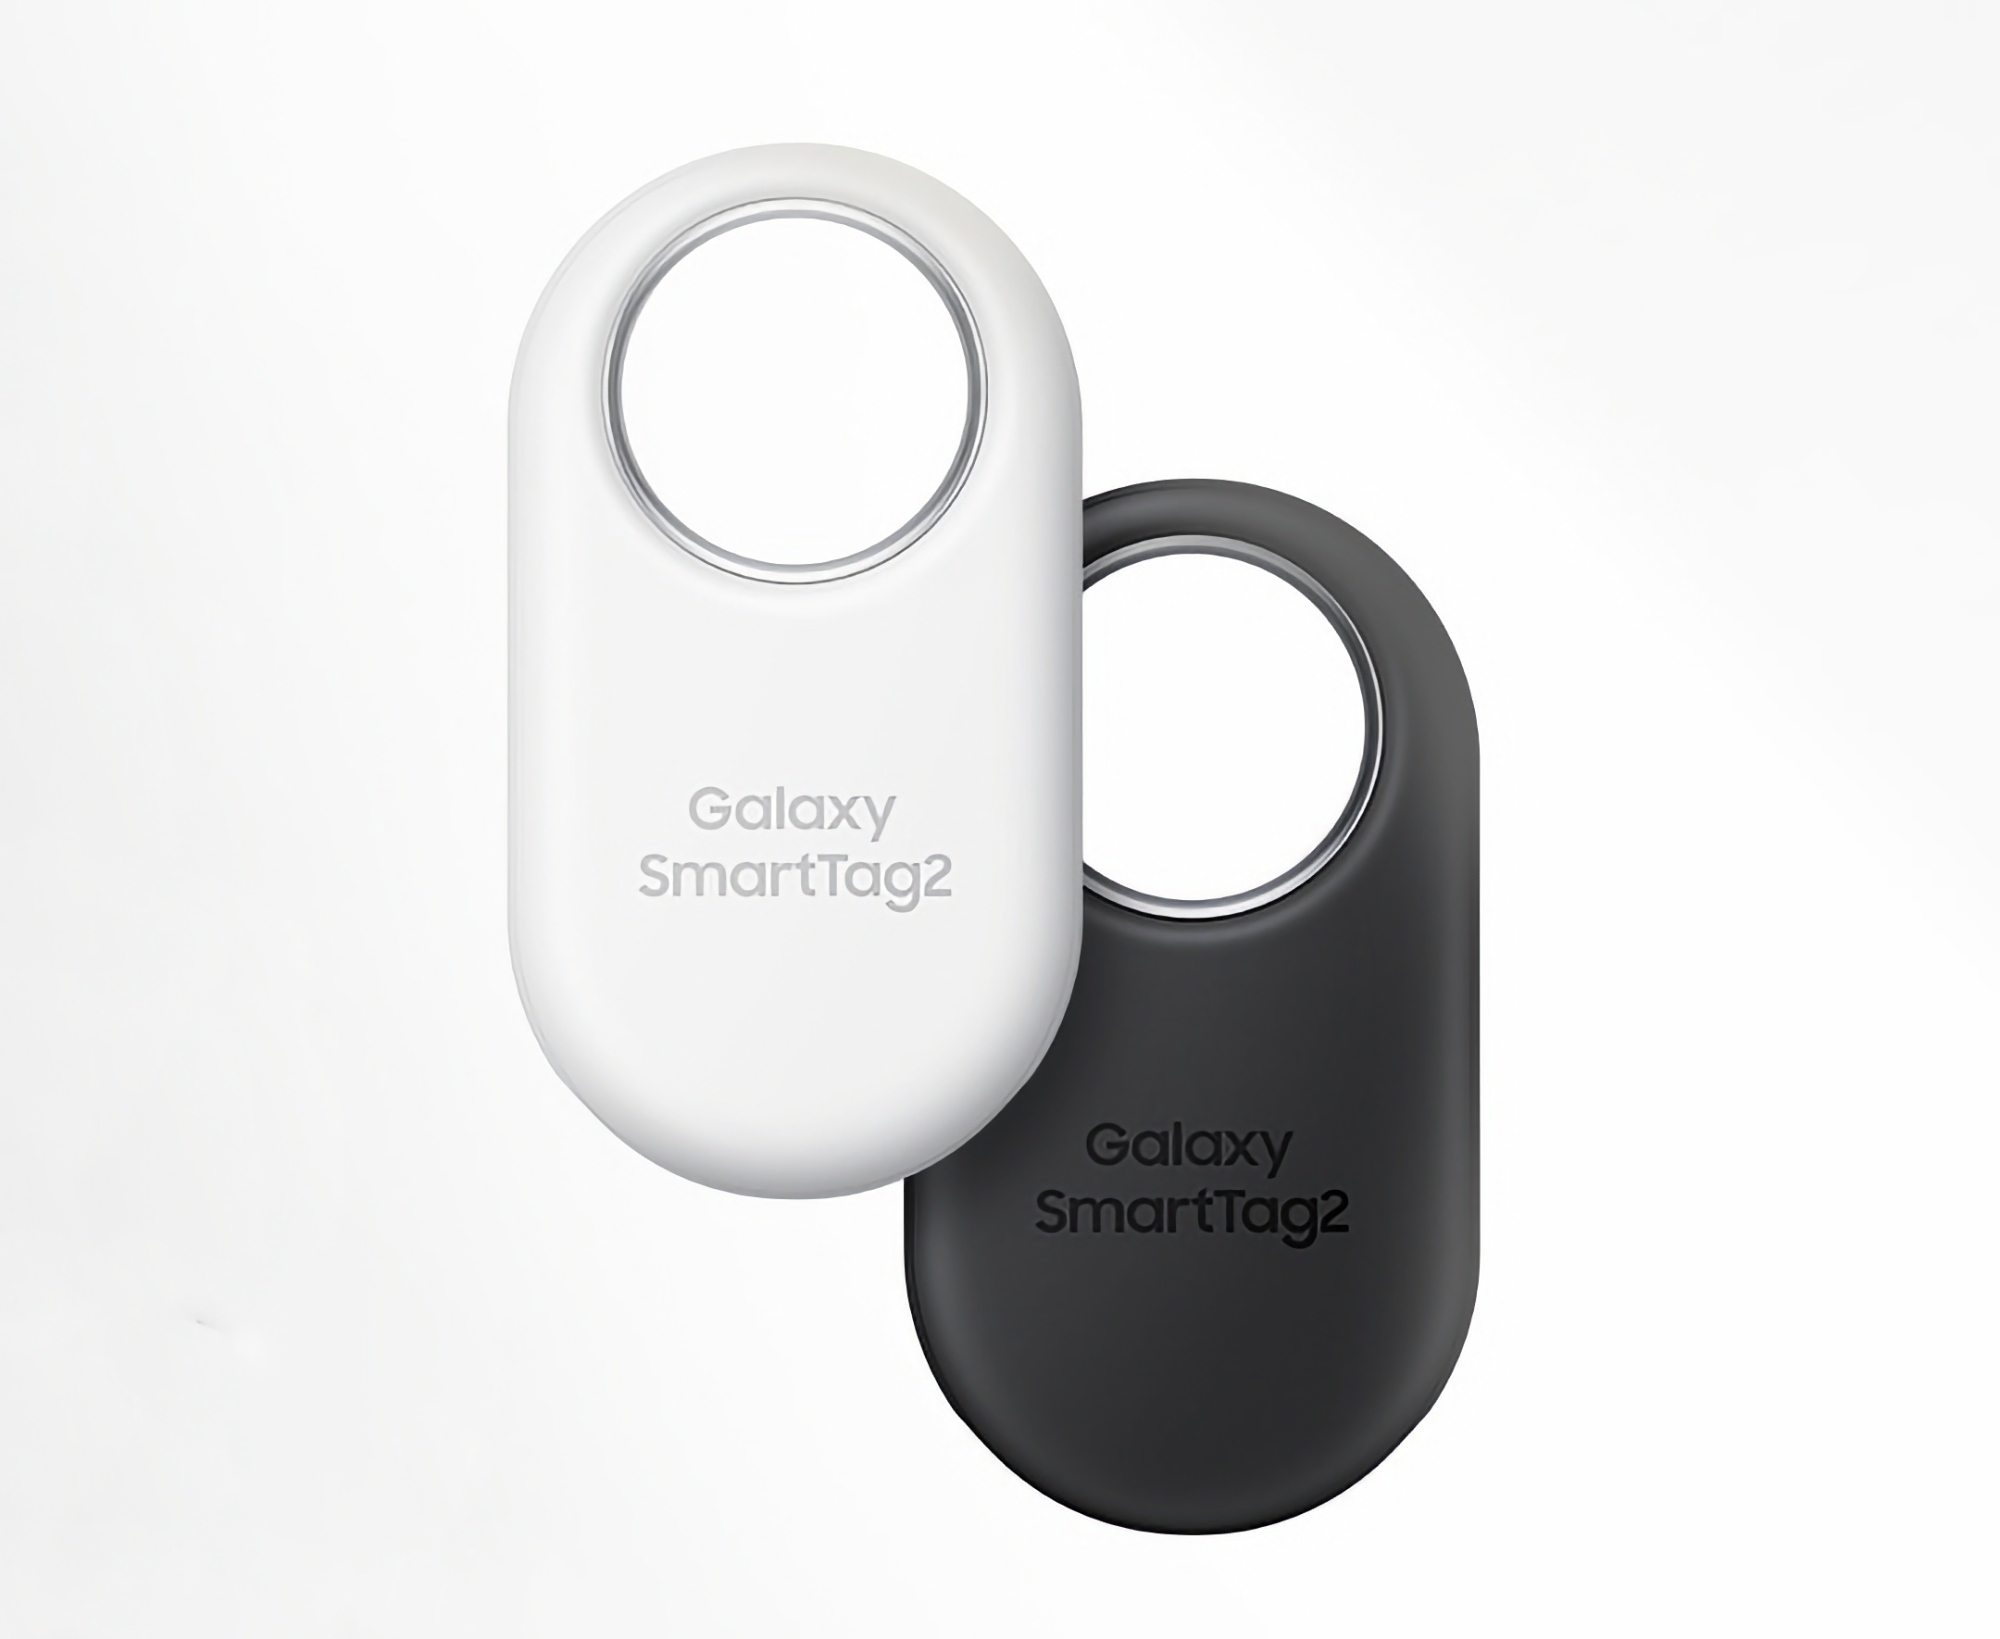 Samsung Galaxy SmartTag 2 kan köpas på Amazon till ett kampanjpris